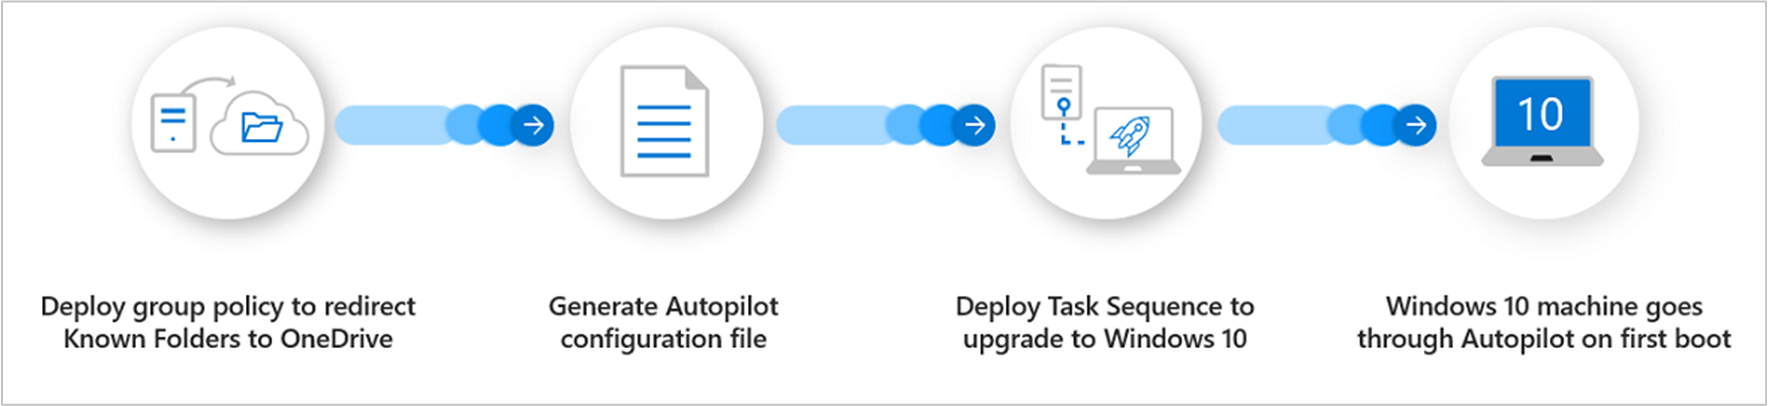 Обзор процесса для Windows Autopilot для существующих устройств